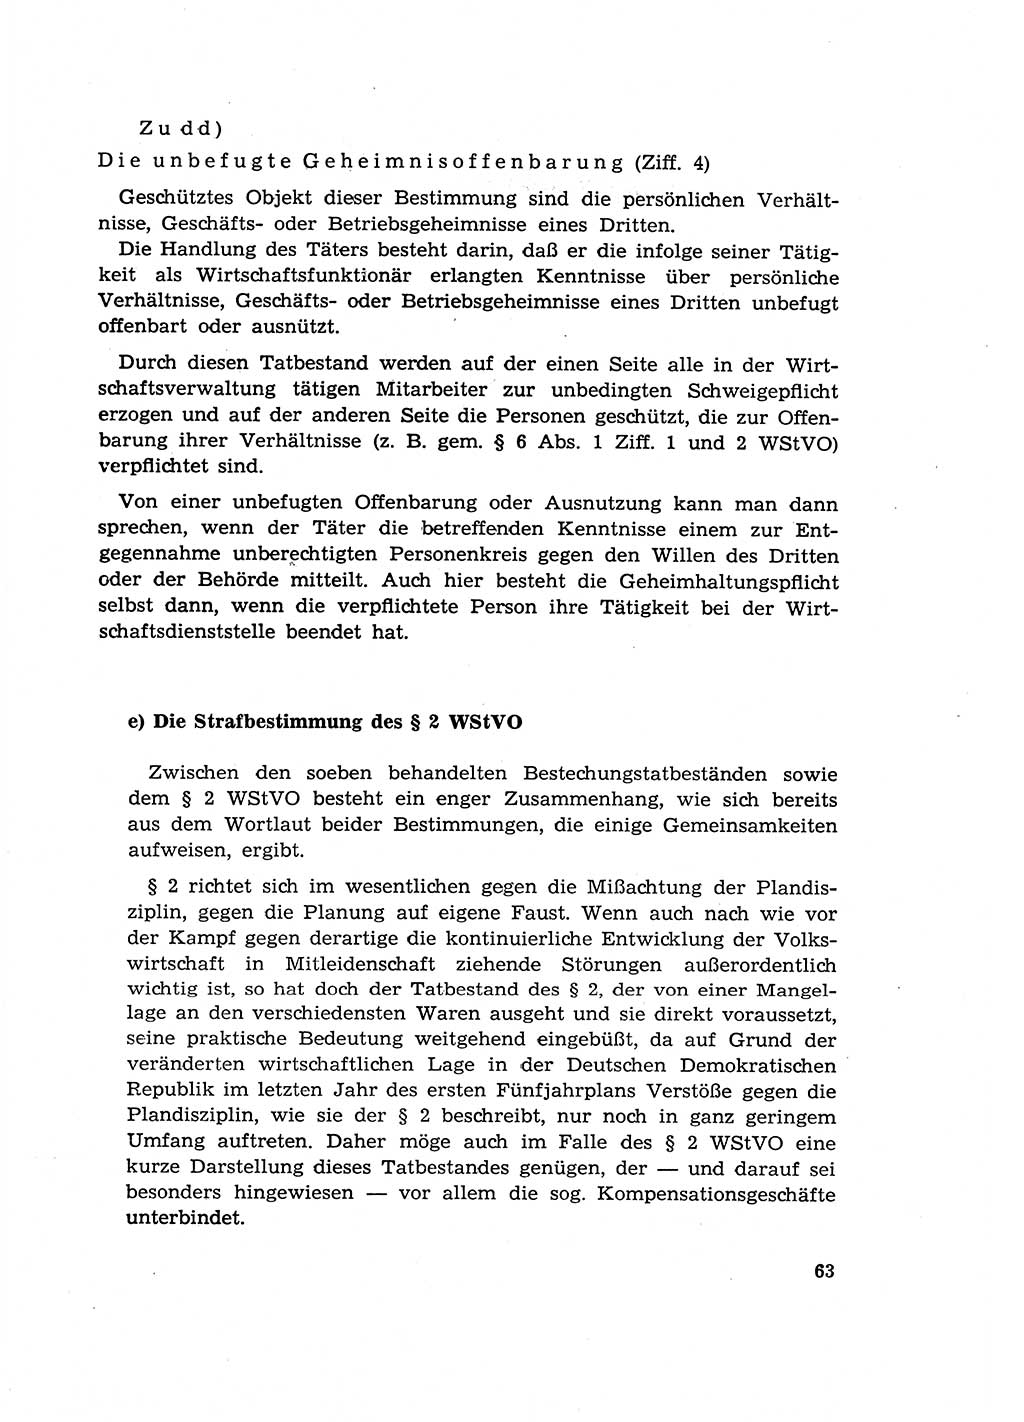 Materialien zum Strafrecht, Besonderer Teil [Deutsche Demokratische Republik (DDR)] 1955, Seite 63 (Mat. Strafr. BT DDR 1955, S. 63)